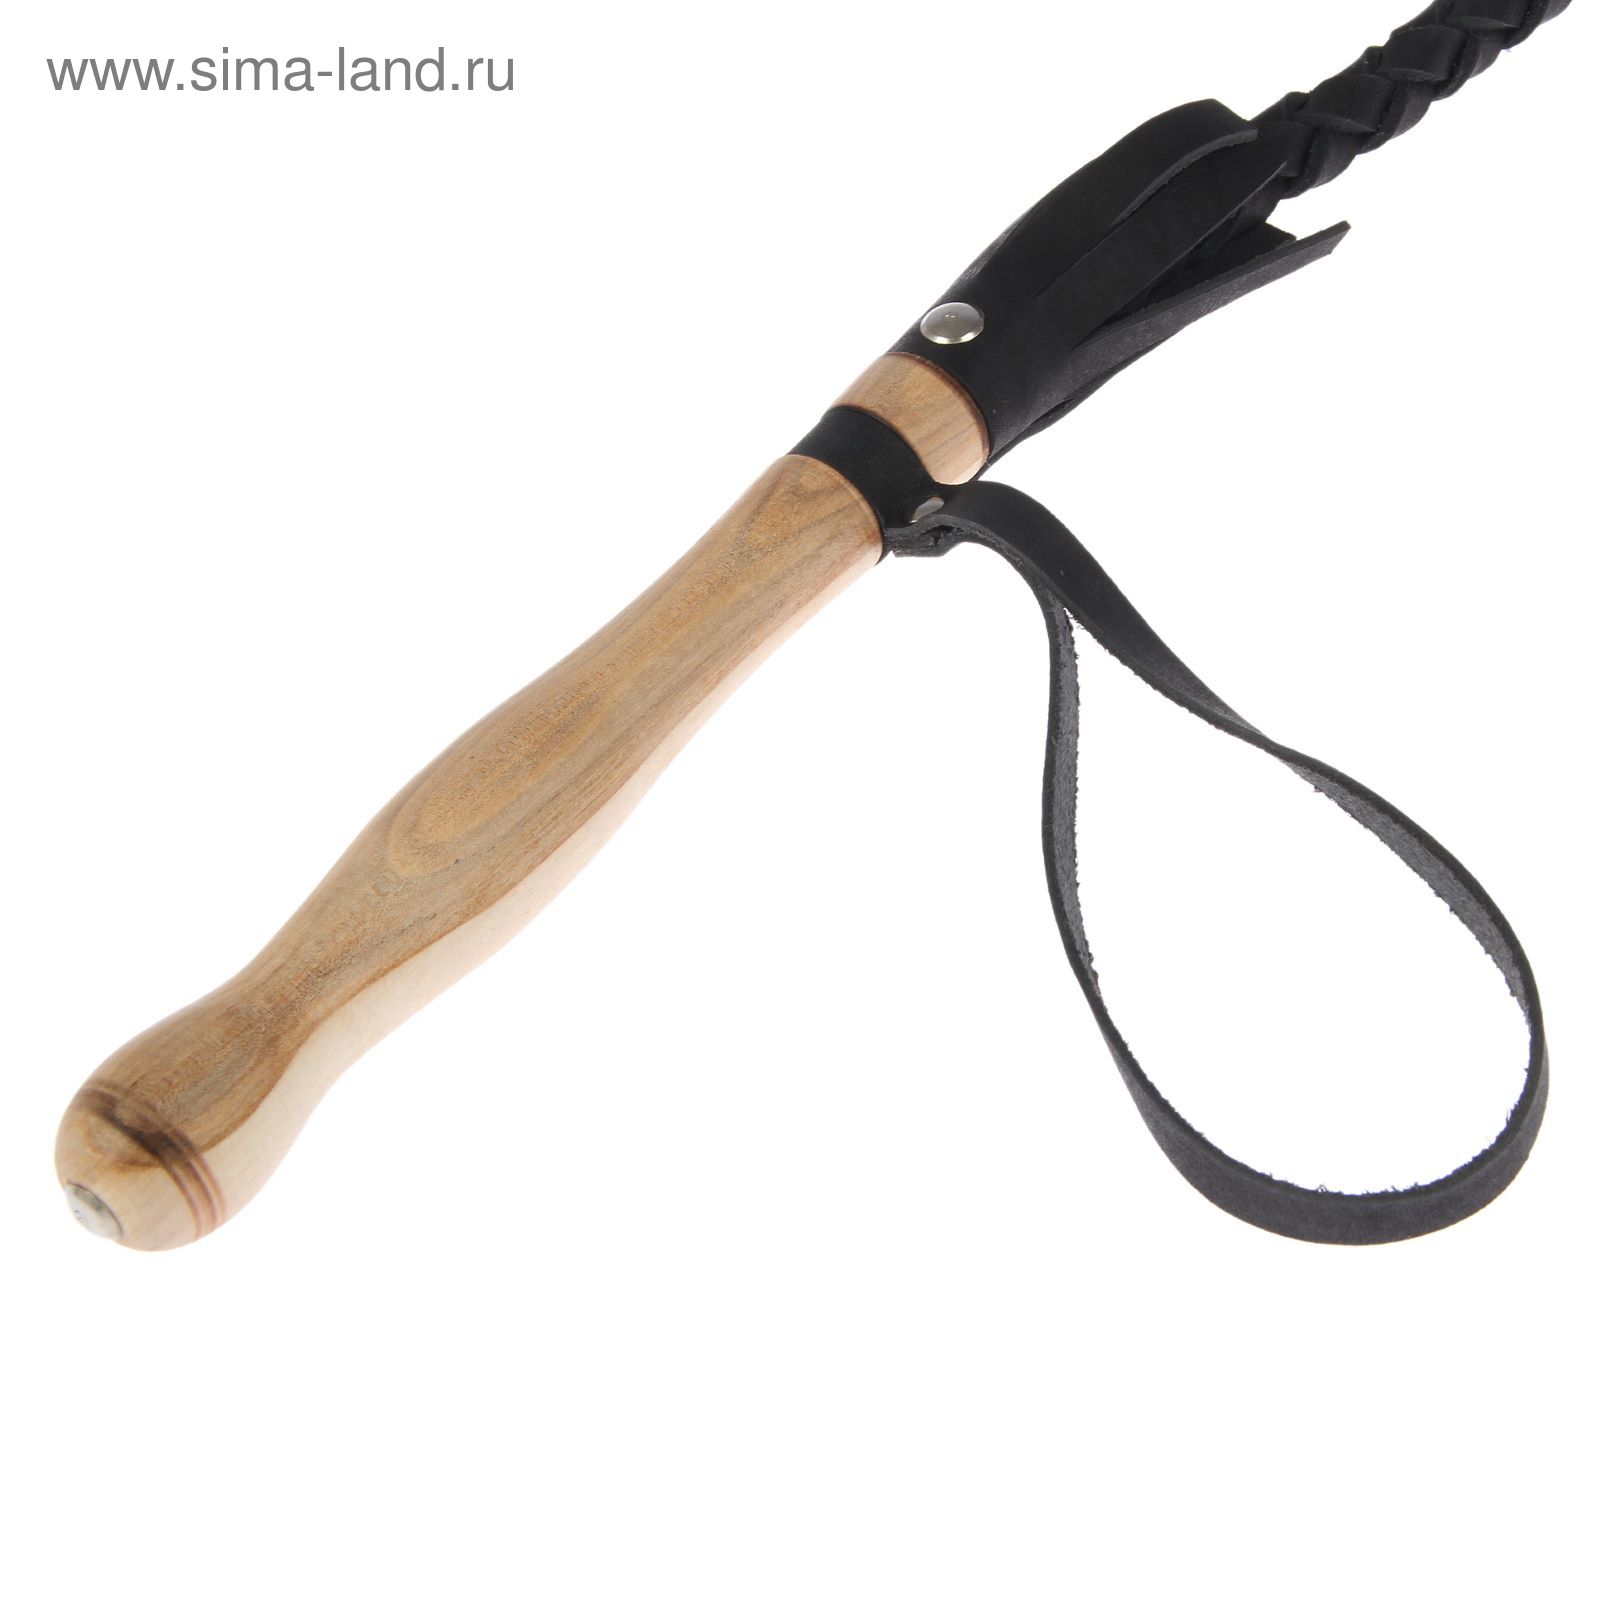 Нагайка Кубанская, деревянная ручка, черная